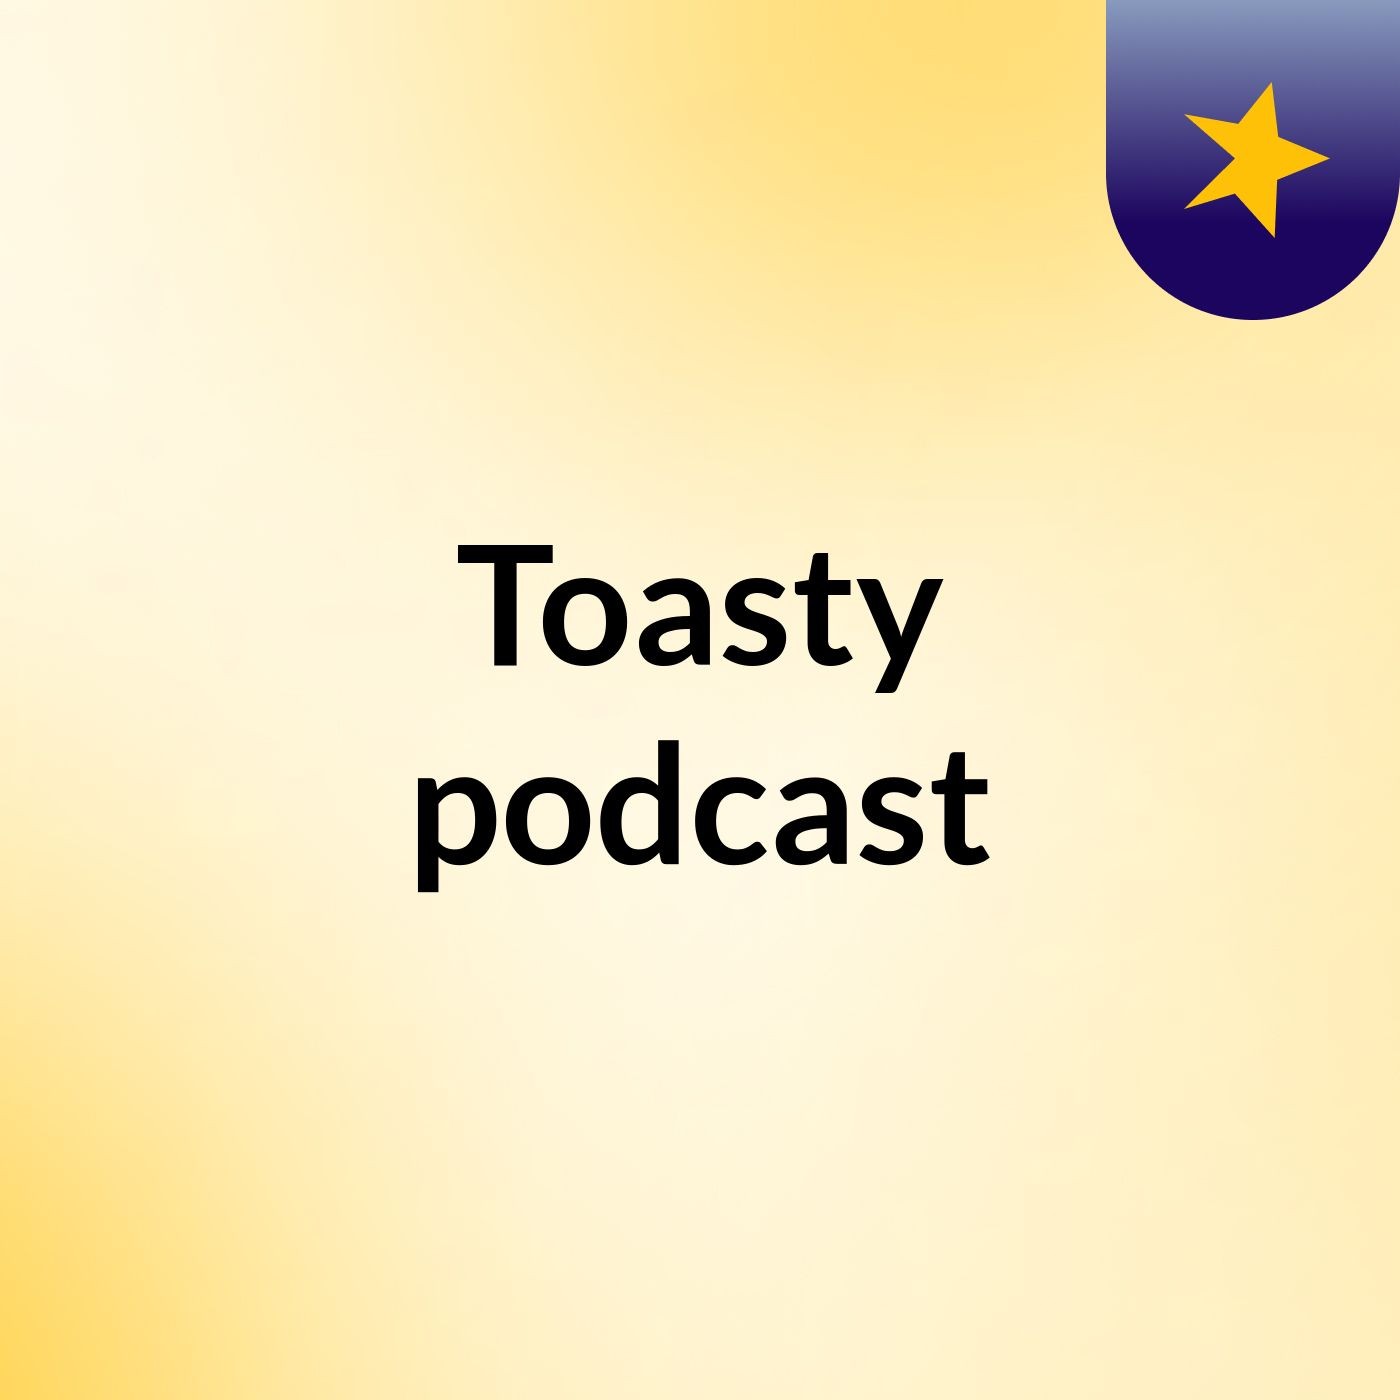 SHARED.TEASER_COLON Toasty podcast